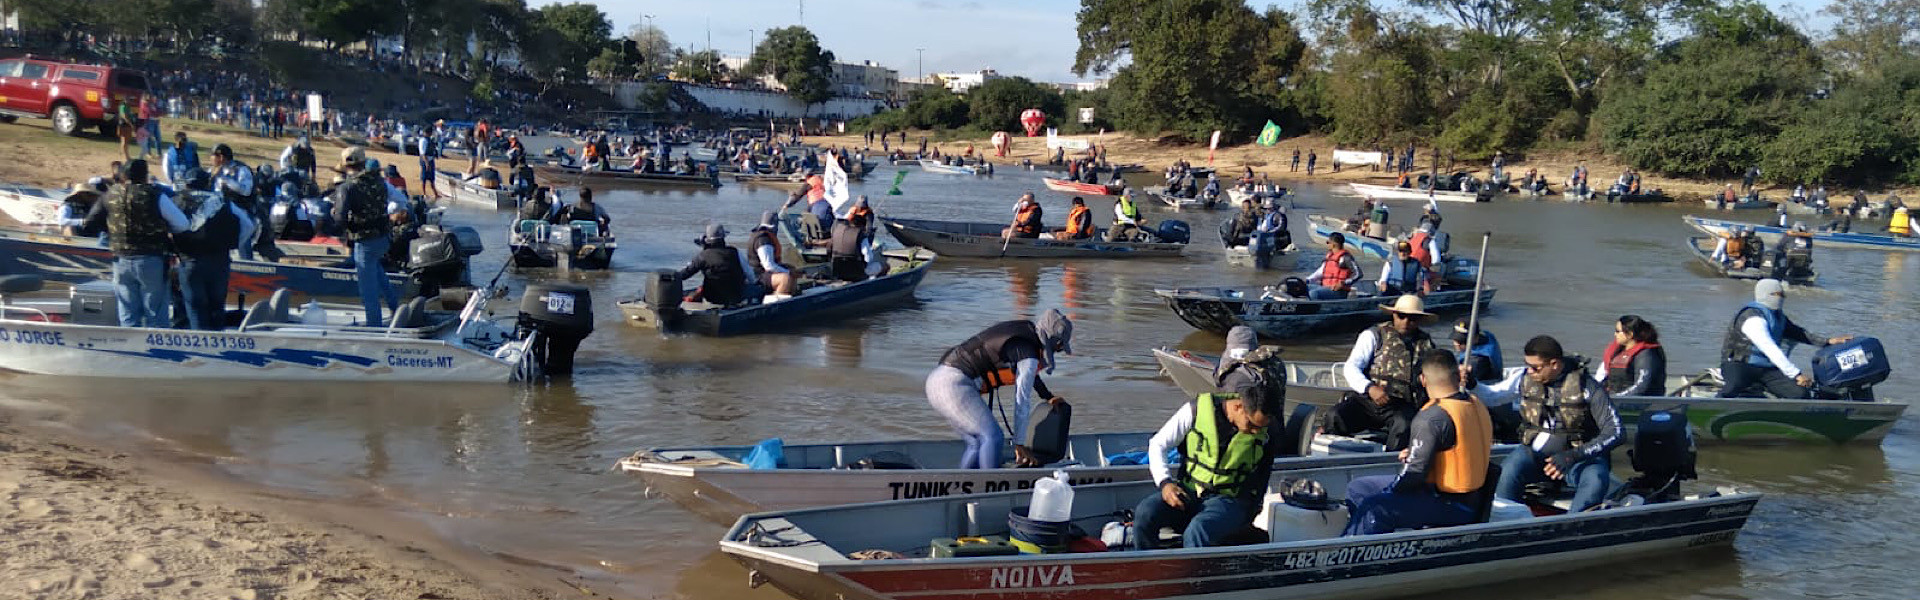 Começa, nesta semana, a 40ª edição do Festival Internacional de Pesca Esportiva de Cáceres-MT